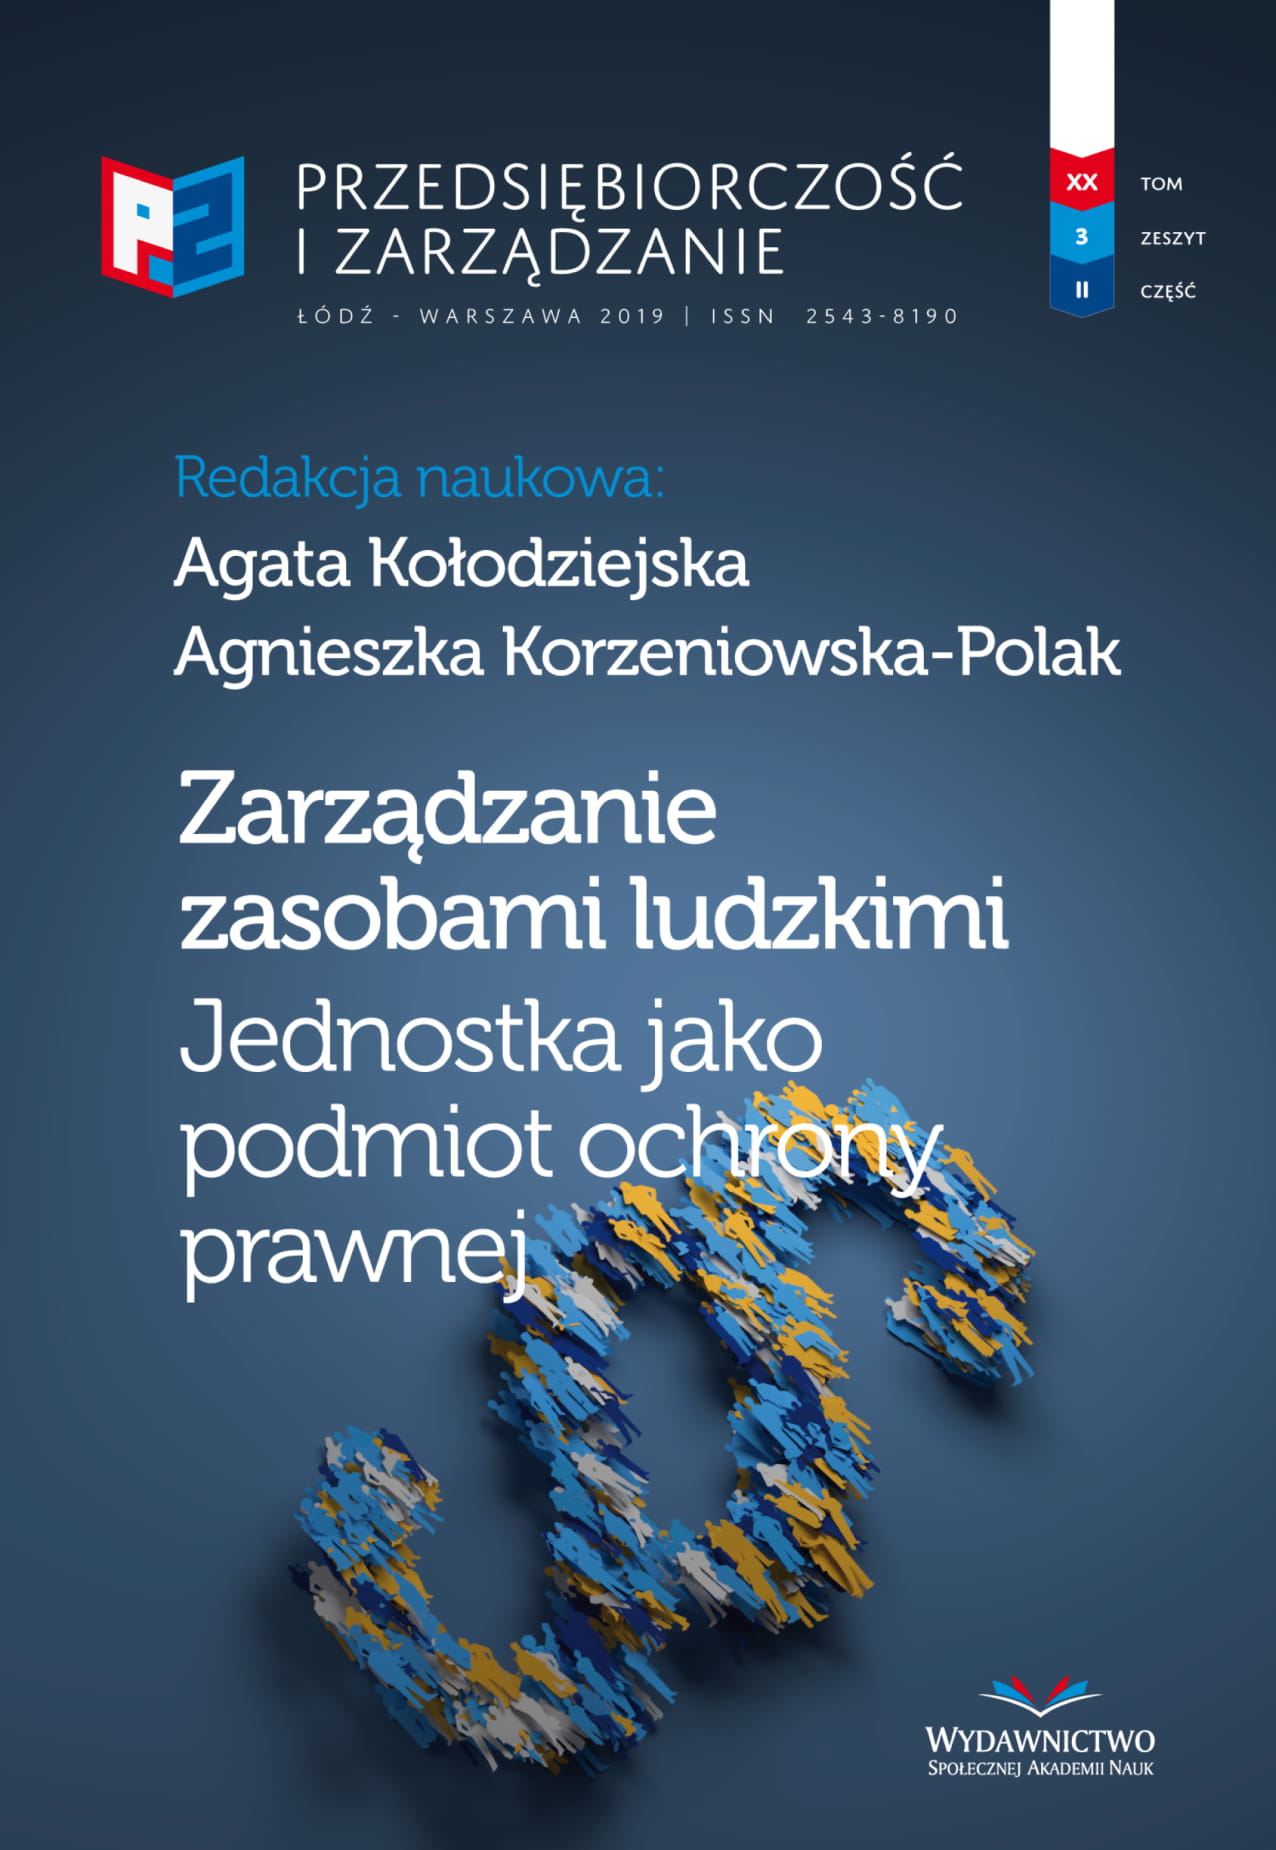 Alternatywne propozycje programowe w stosunku do
Planu Balcerowicza